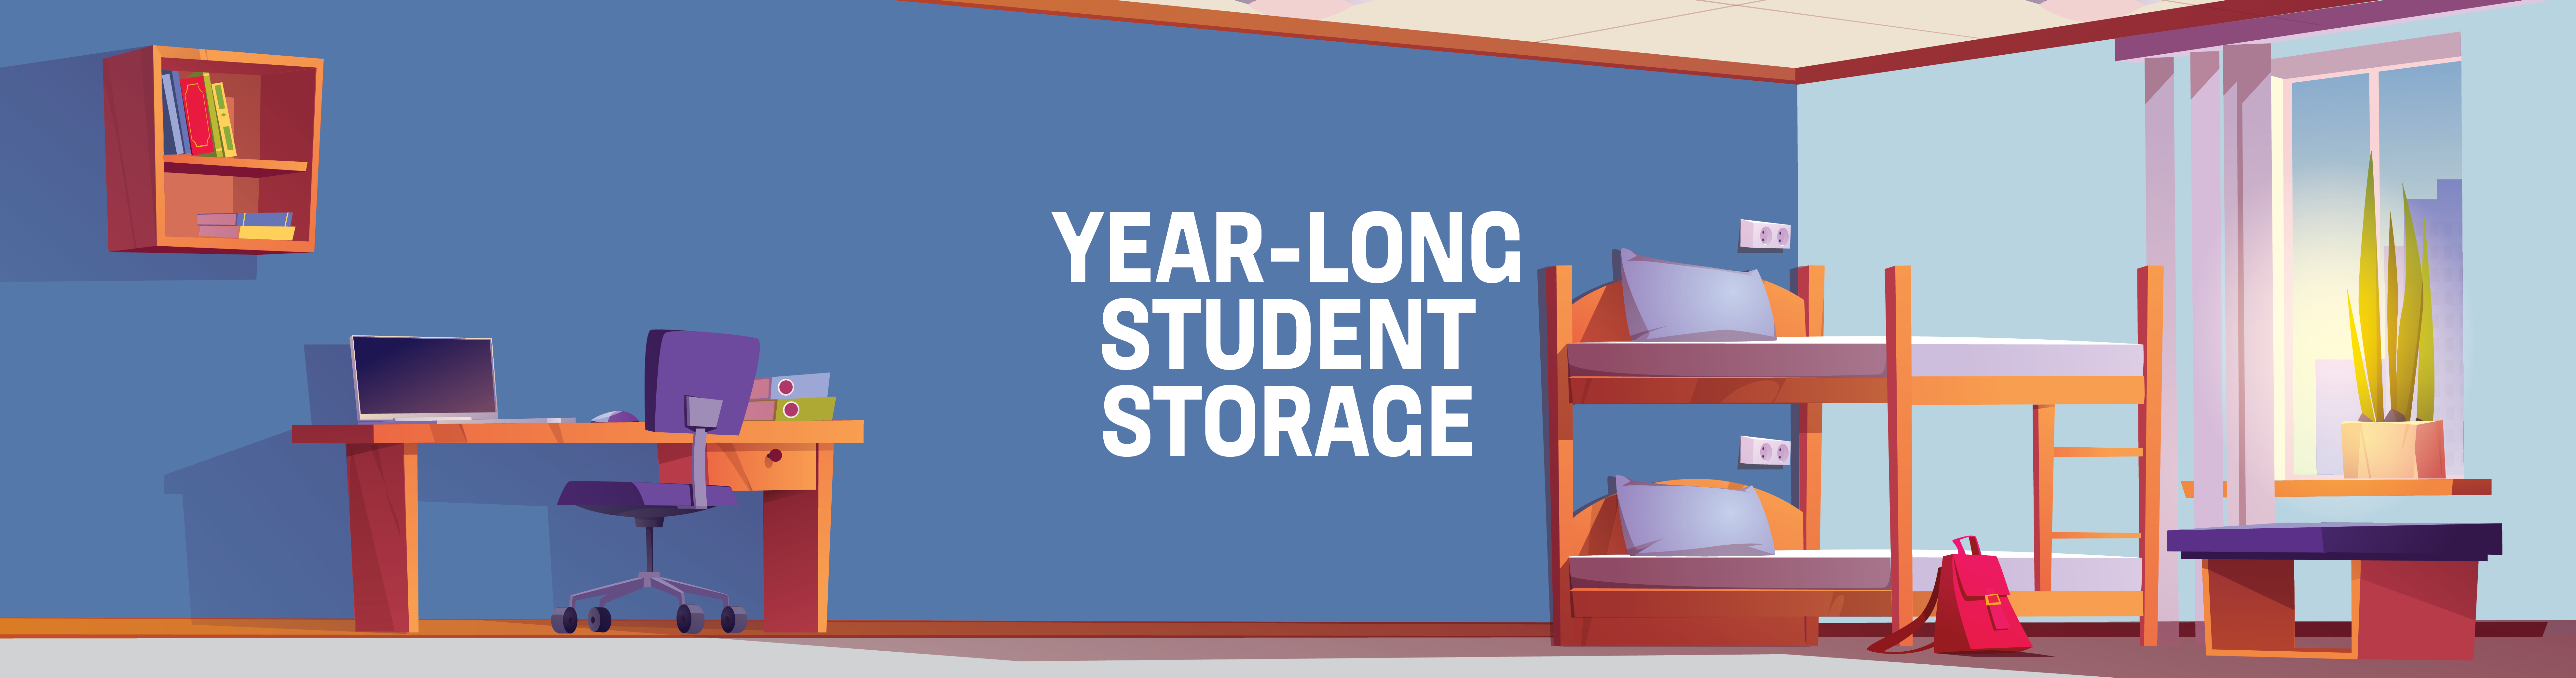 year-long student storage at Storage Depot of Hampton